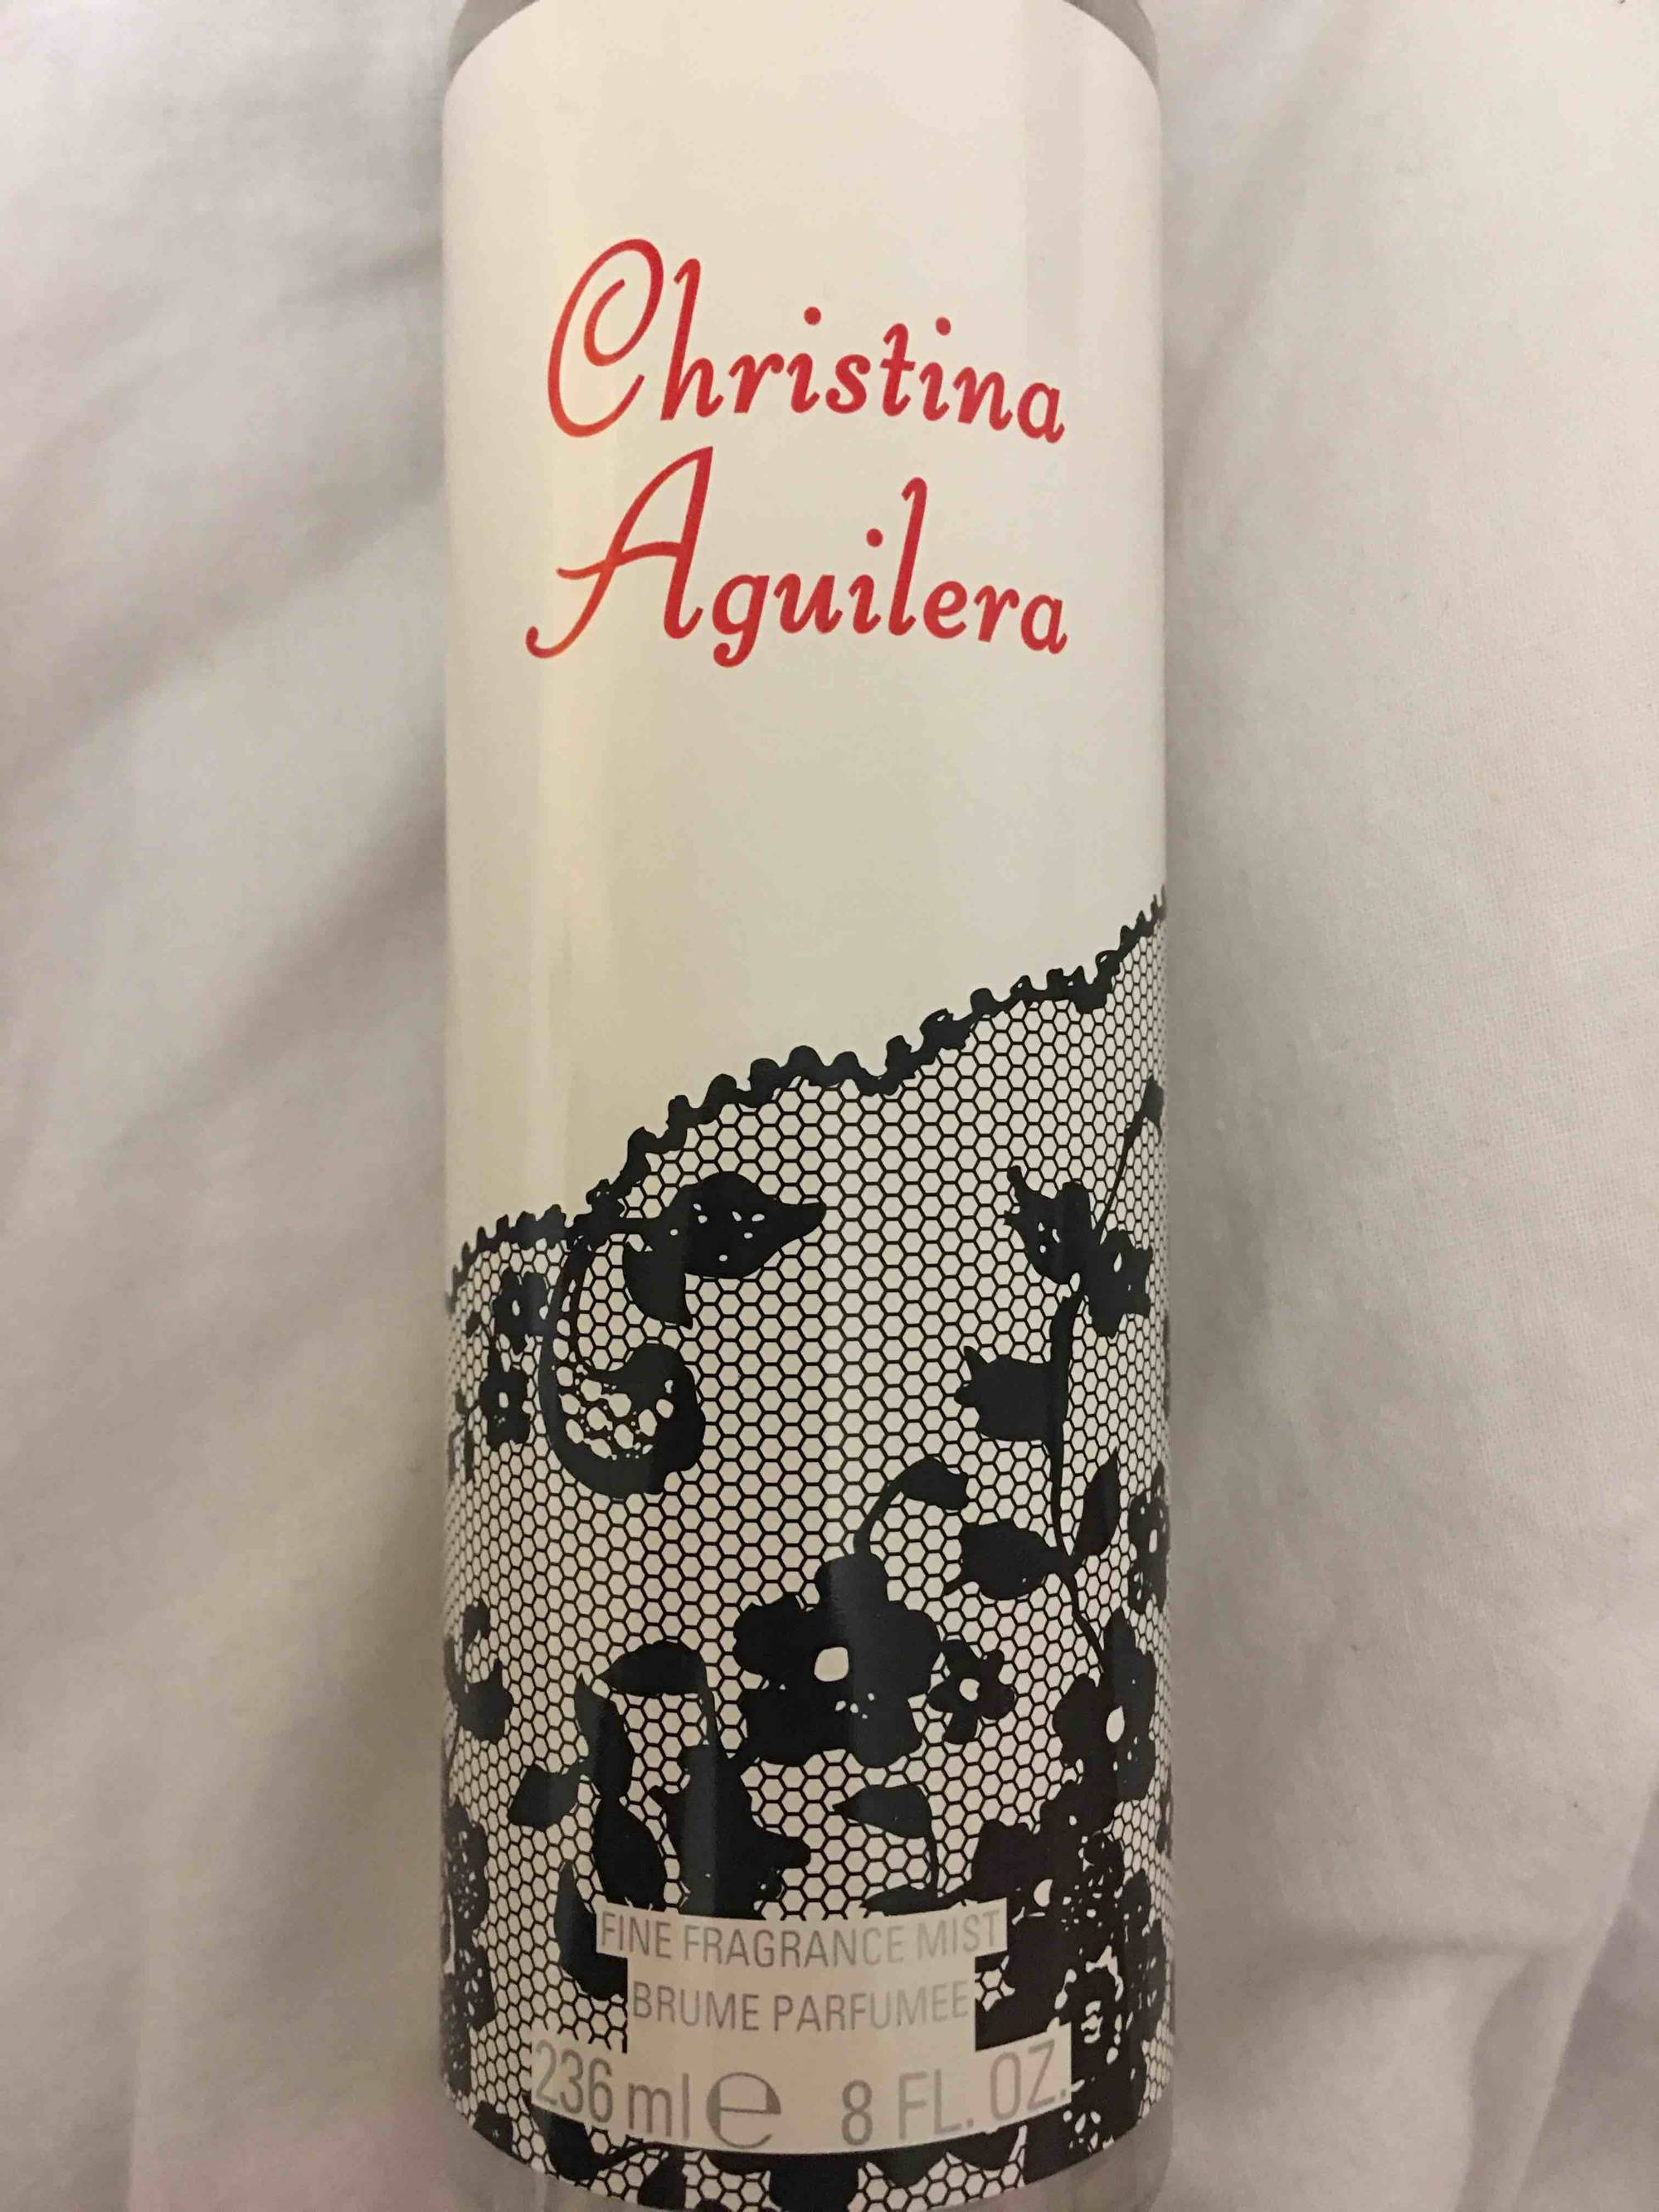 CHRISTINA AGUILERA - Brume parfumée